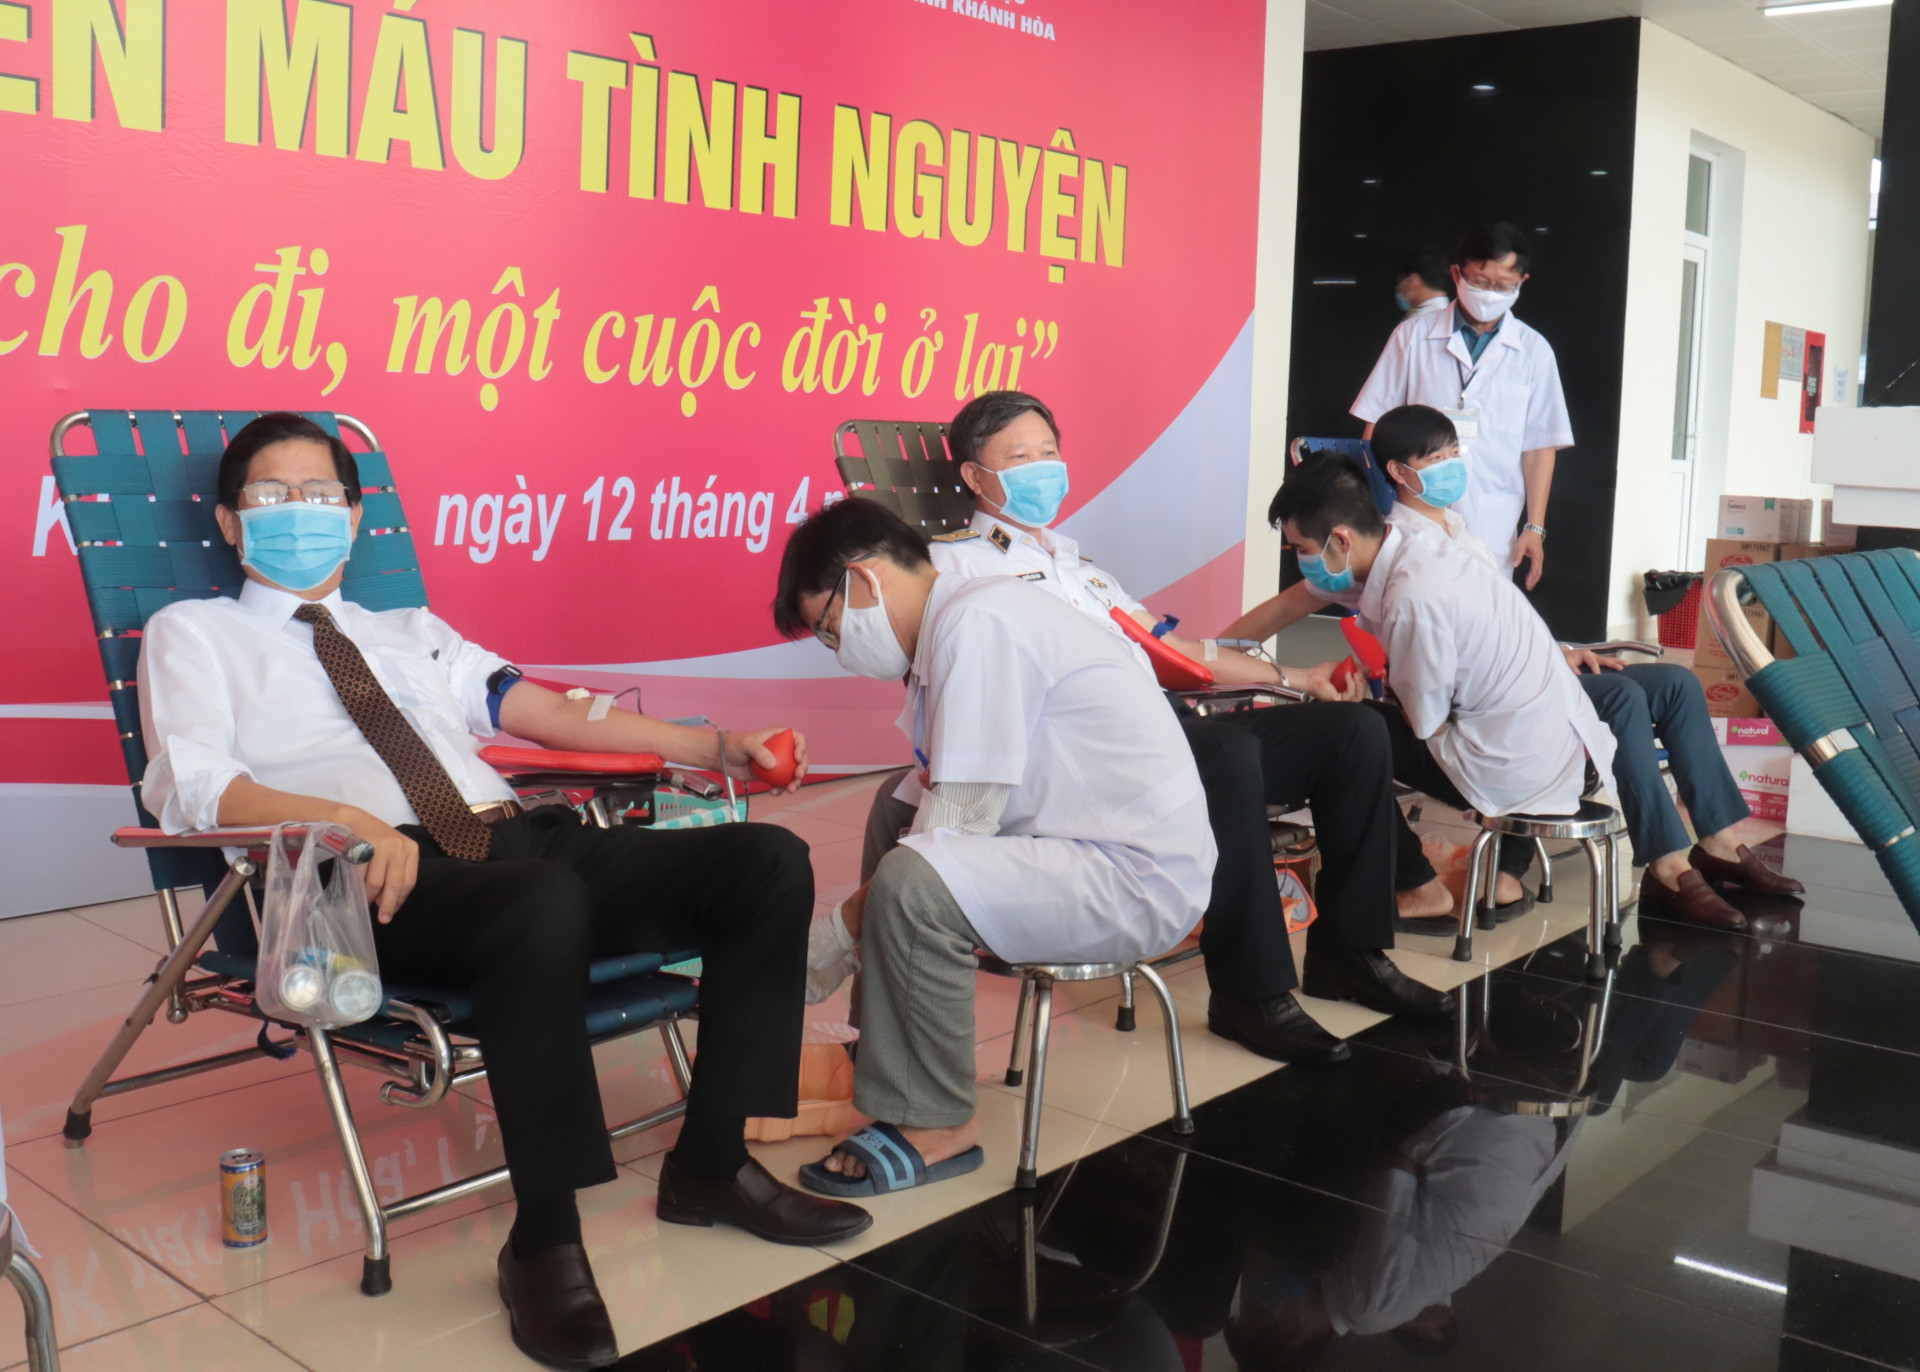 Ông Nguyễn Tấn Tuân tham gia hiến máu tình nguyện